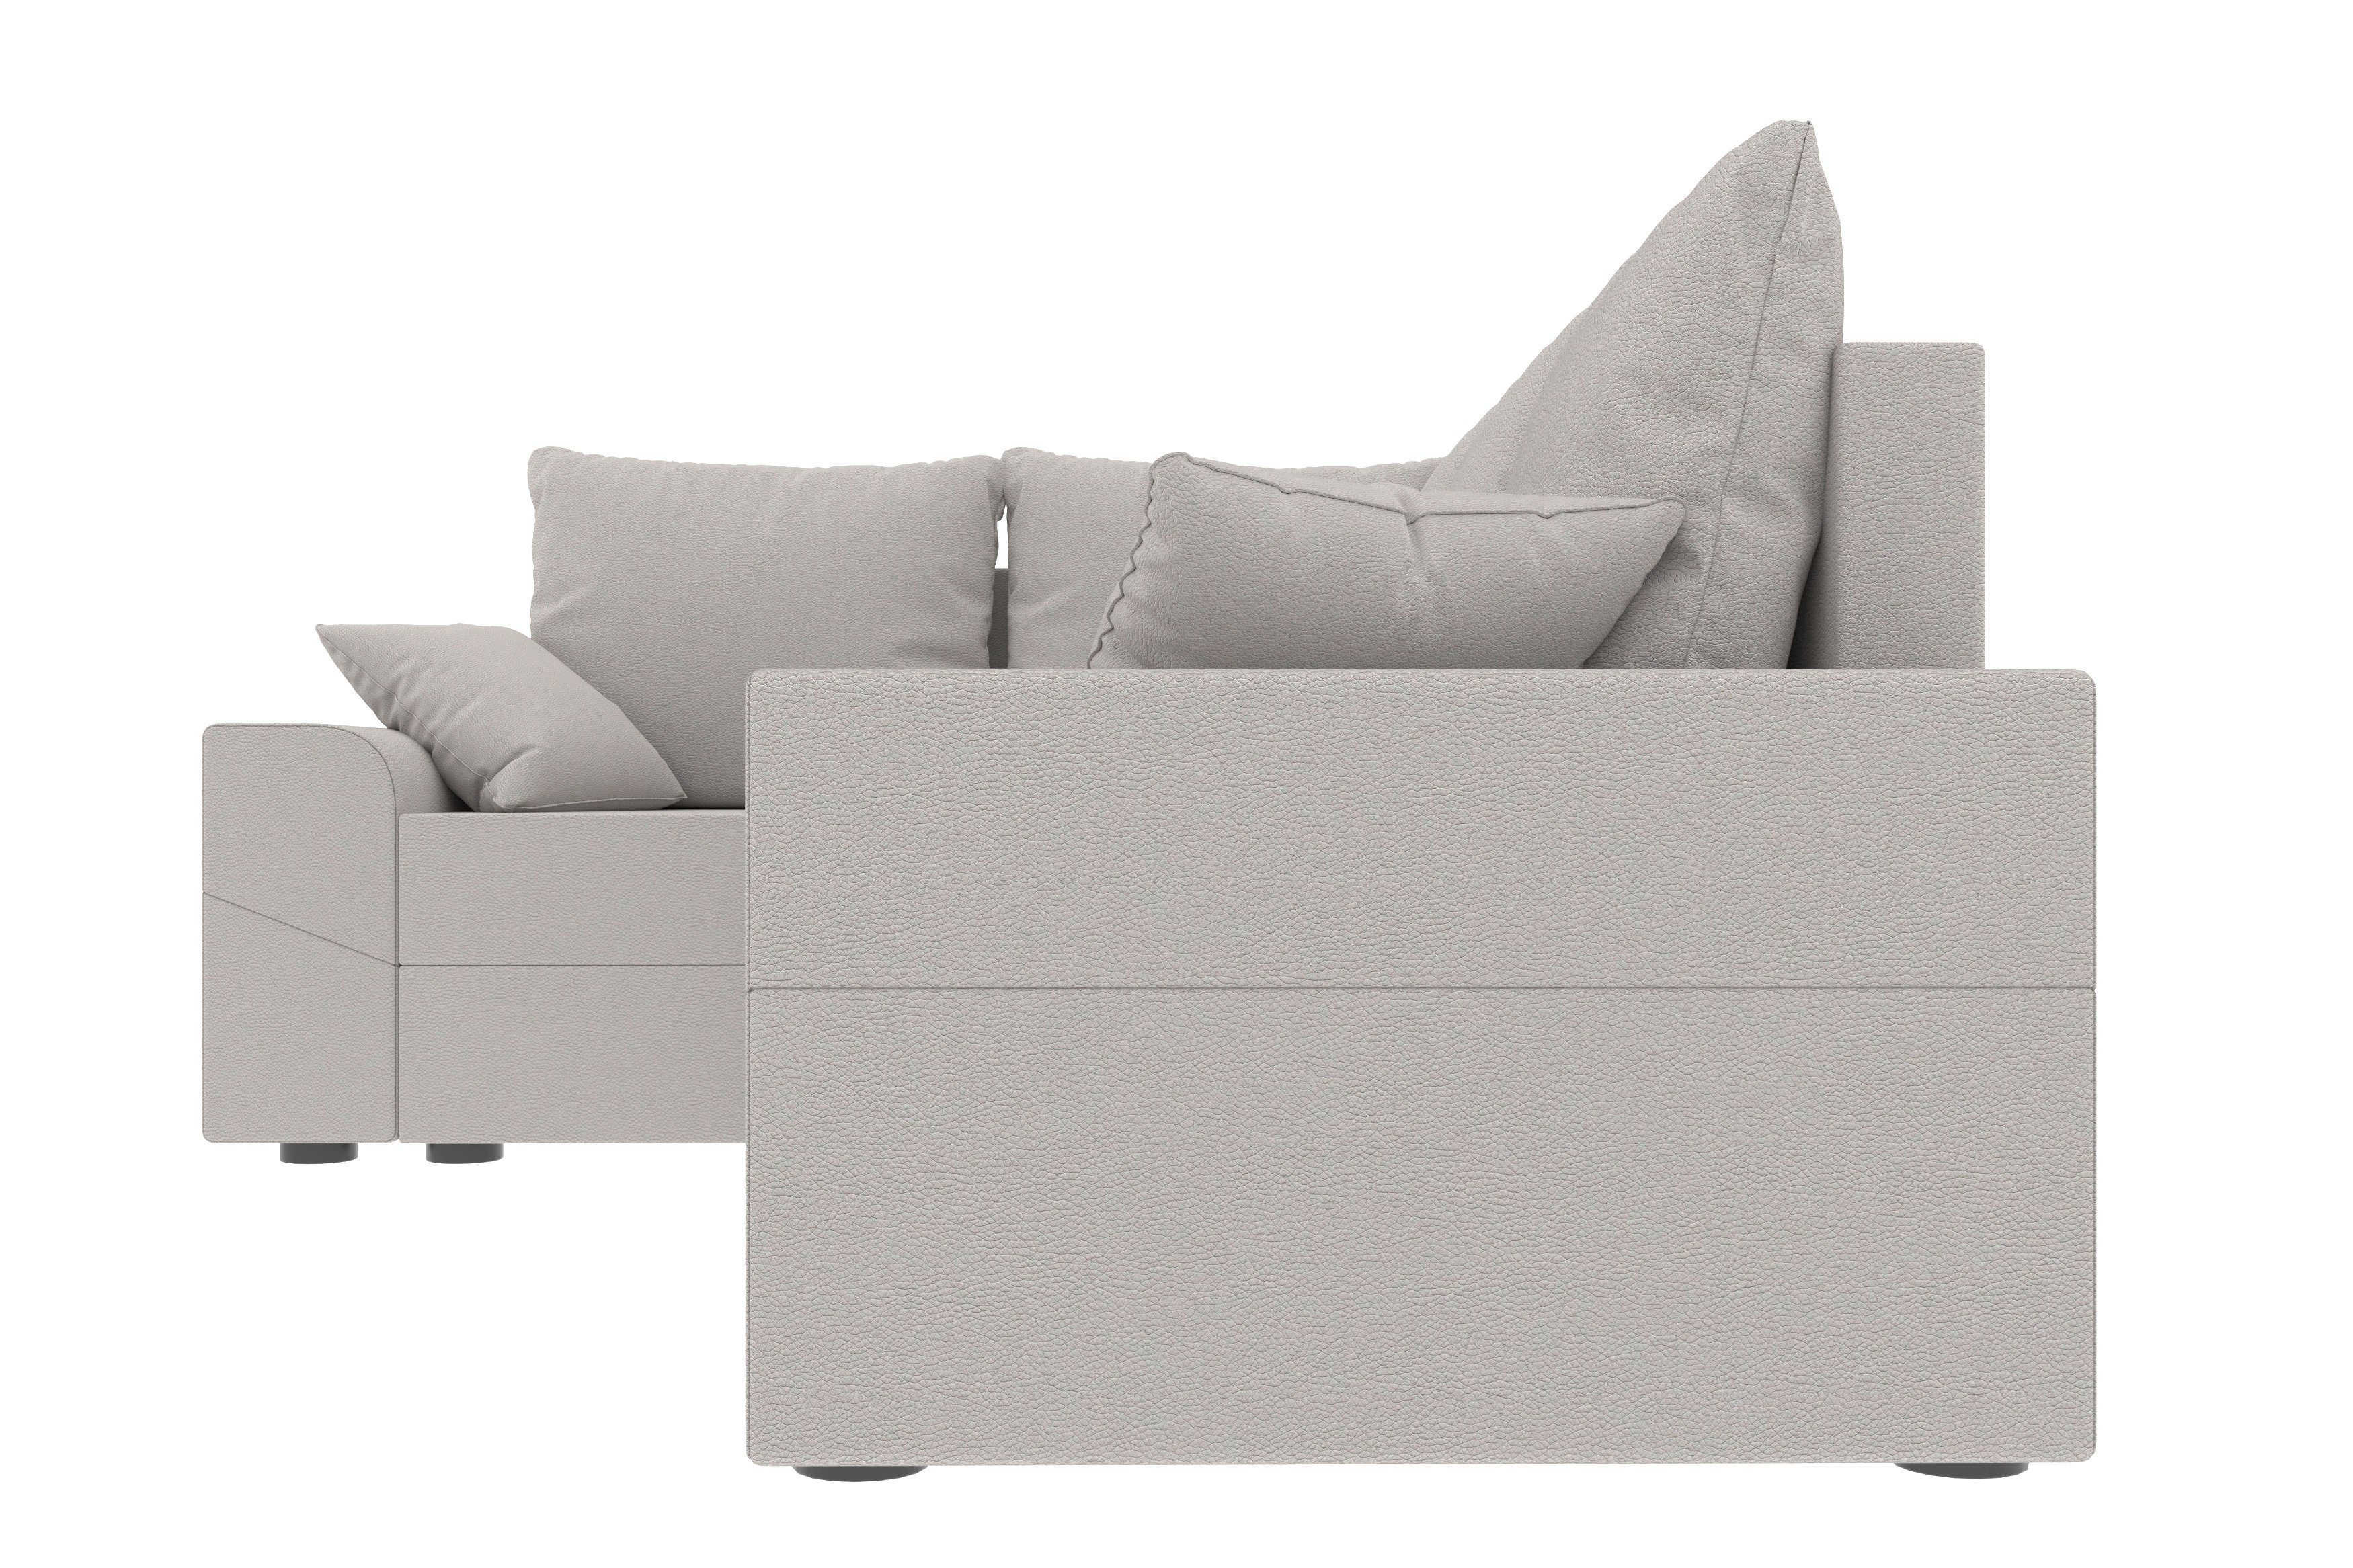 Bettfunktion, mit Sofa, Bettkasten, Eckcouch, Sitzkomfort, Modern L-Form, Ecksofa mit Design Montero, Stylefy